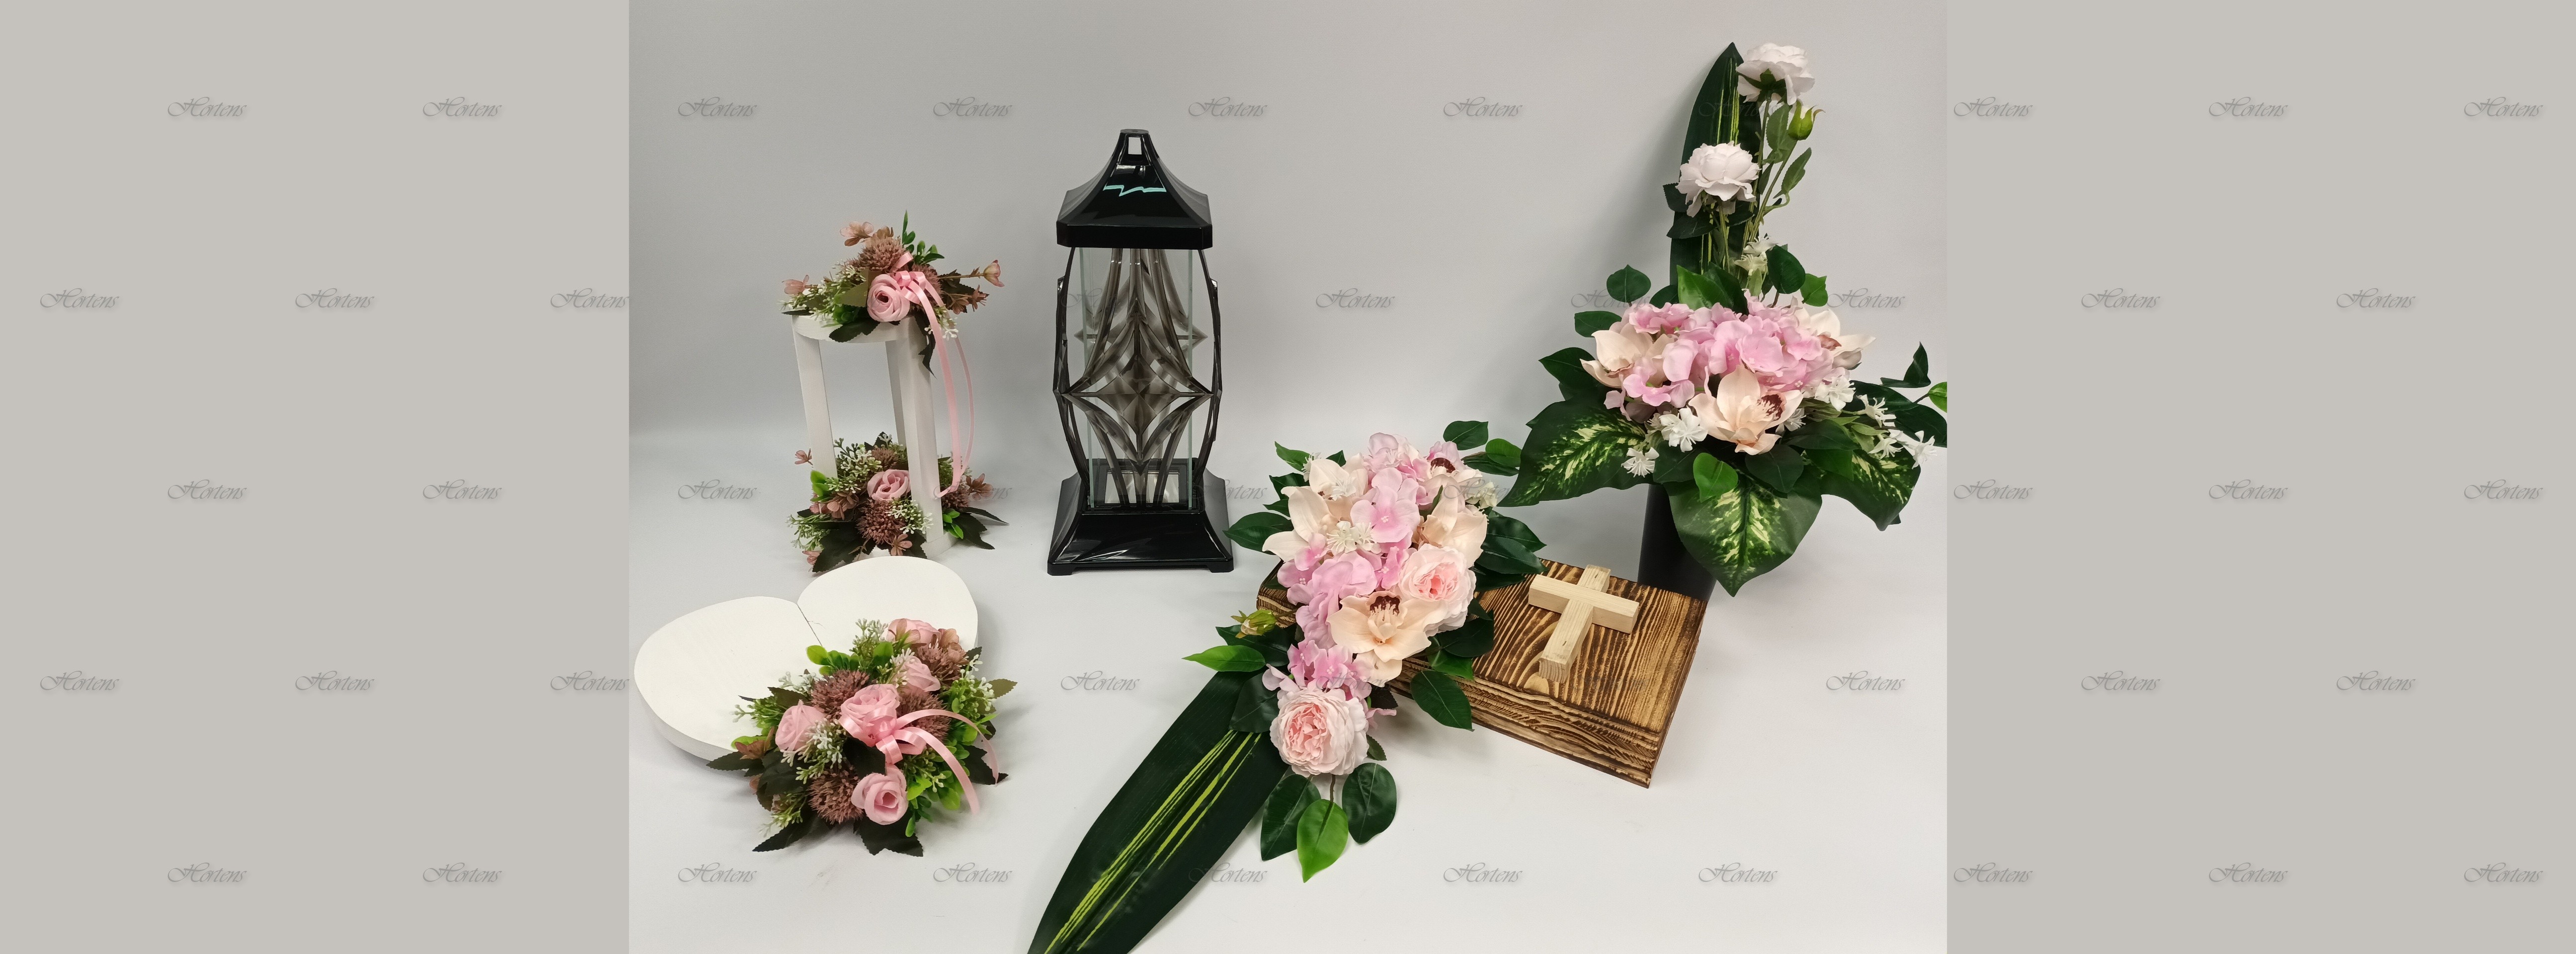 výrobce svíček velkoobchodníci s umělými květinami sádrové figurky Polsko